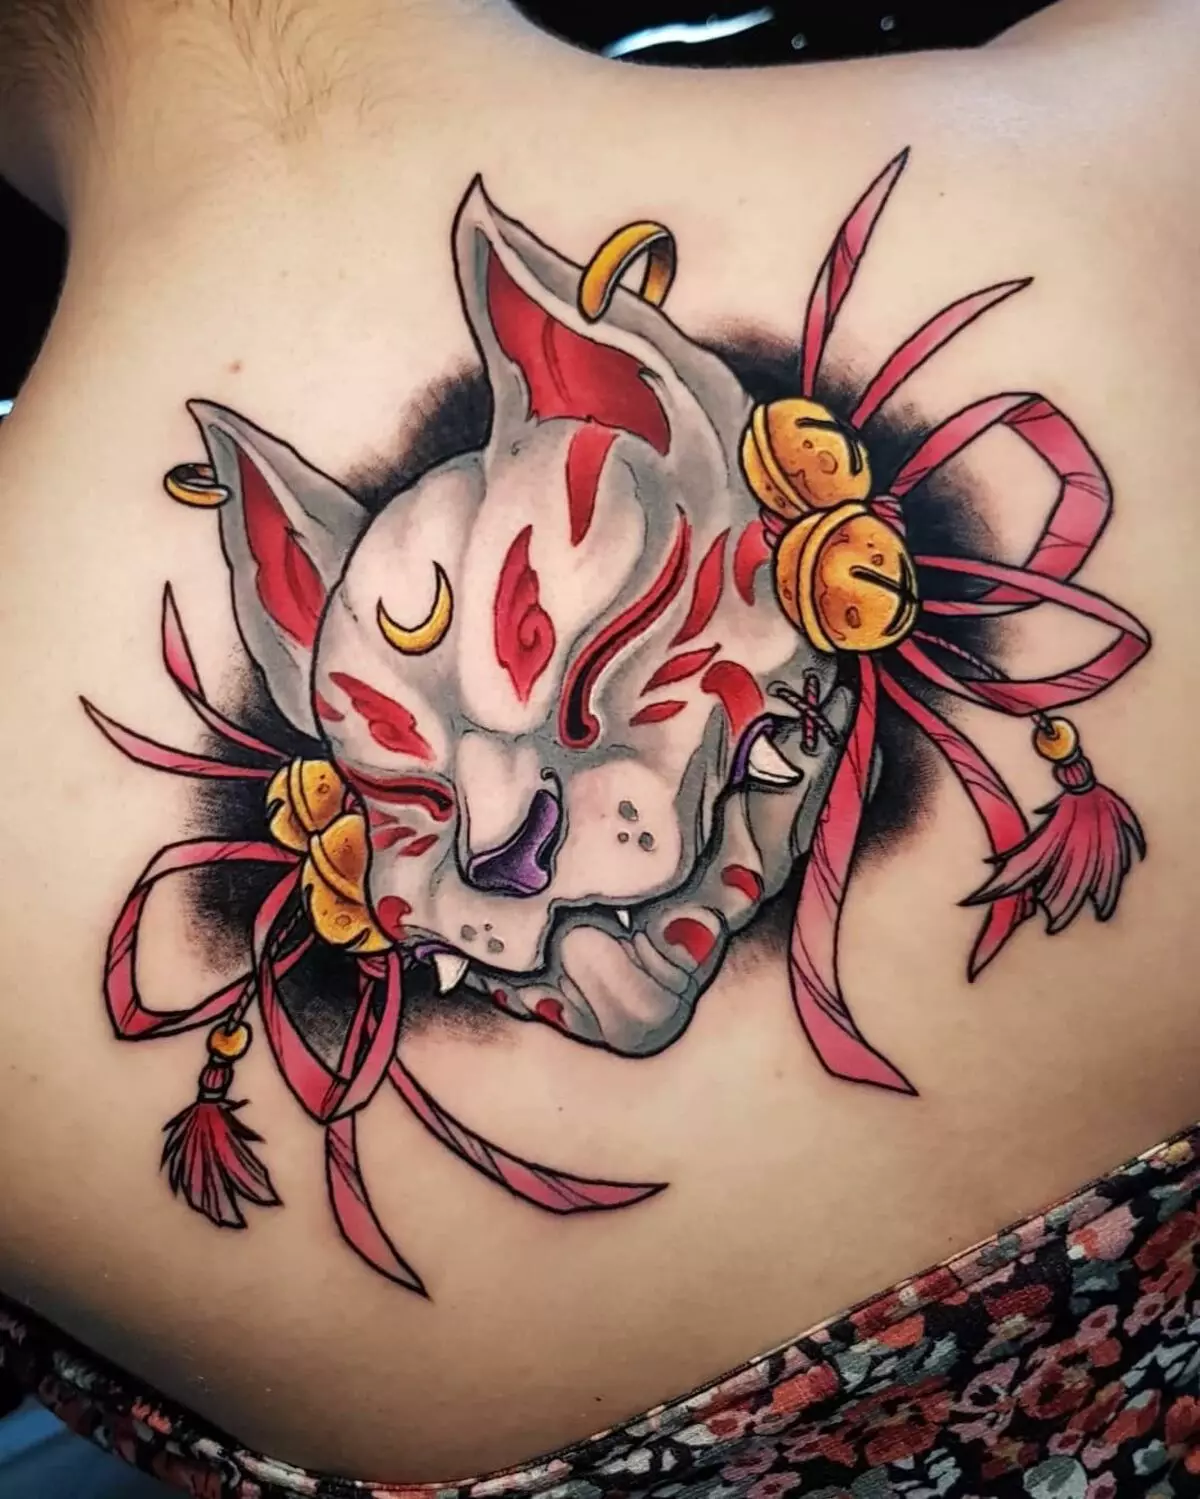 Tetování ve formě japonských masek: démoni a jejich významy. Náčrtky tetování ve stylu Japonských masek. Tetování 